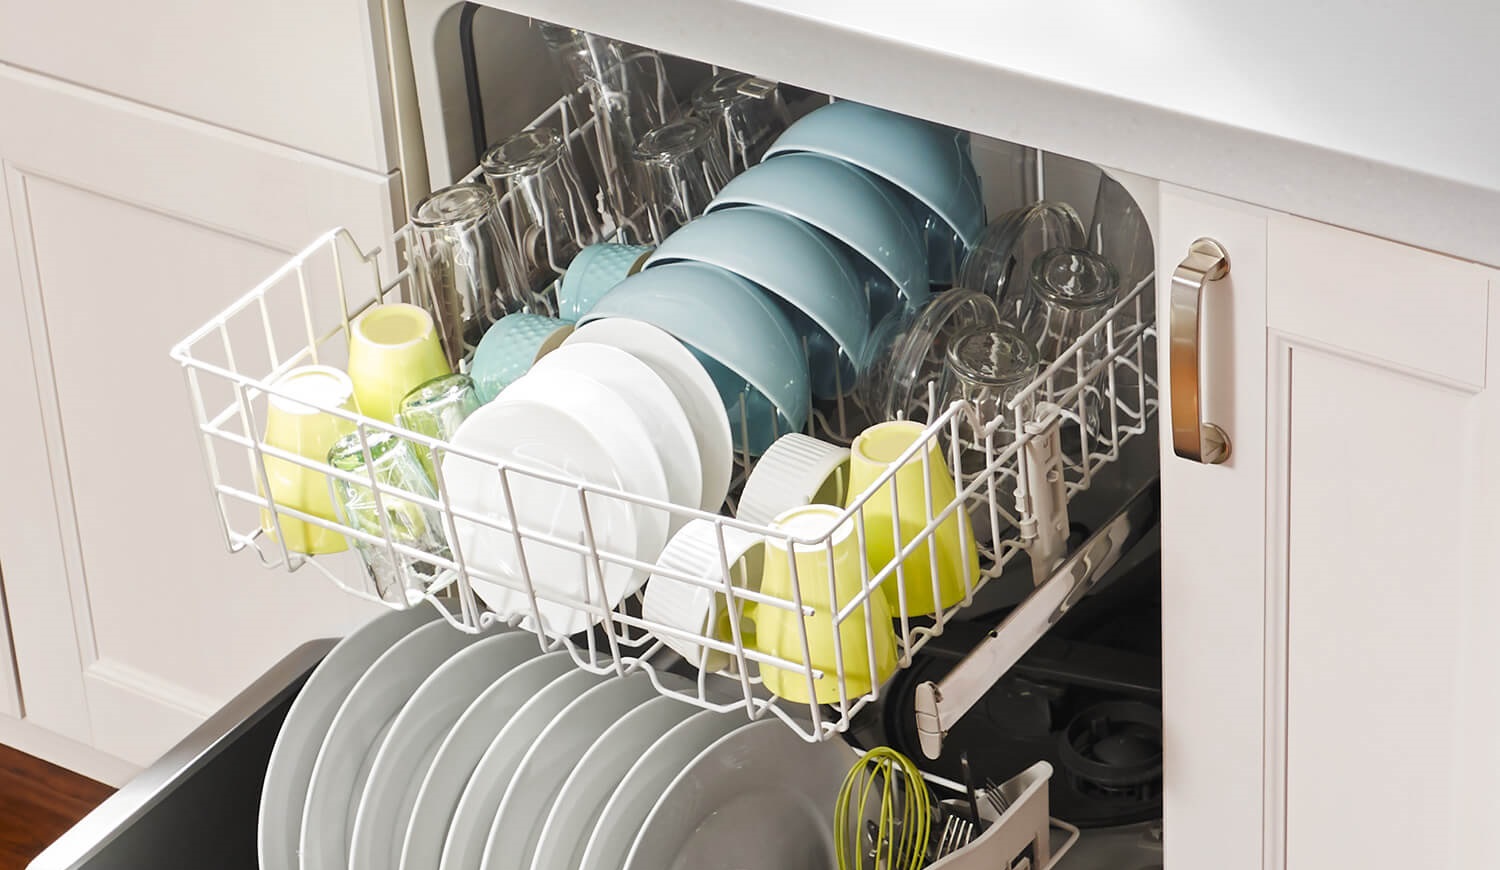 ماشین ظرفشویی - ظرف مناسب ماشین ظرفشویی